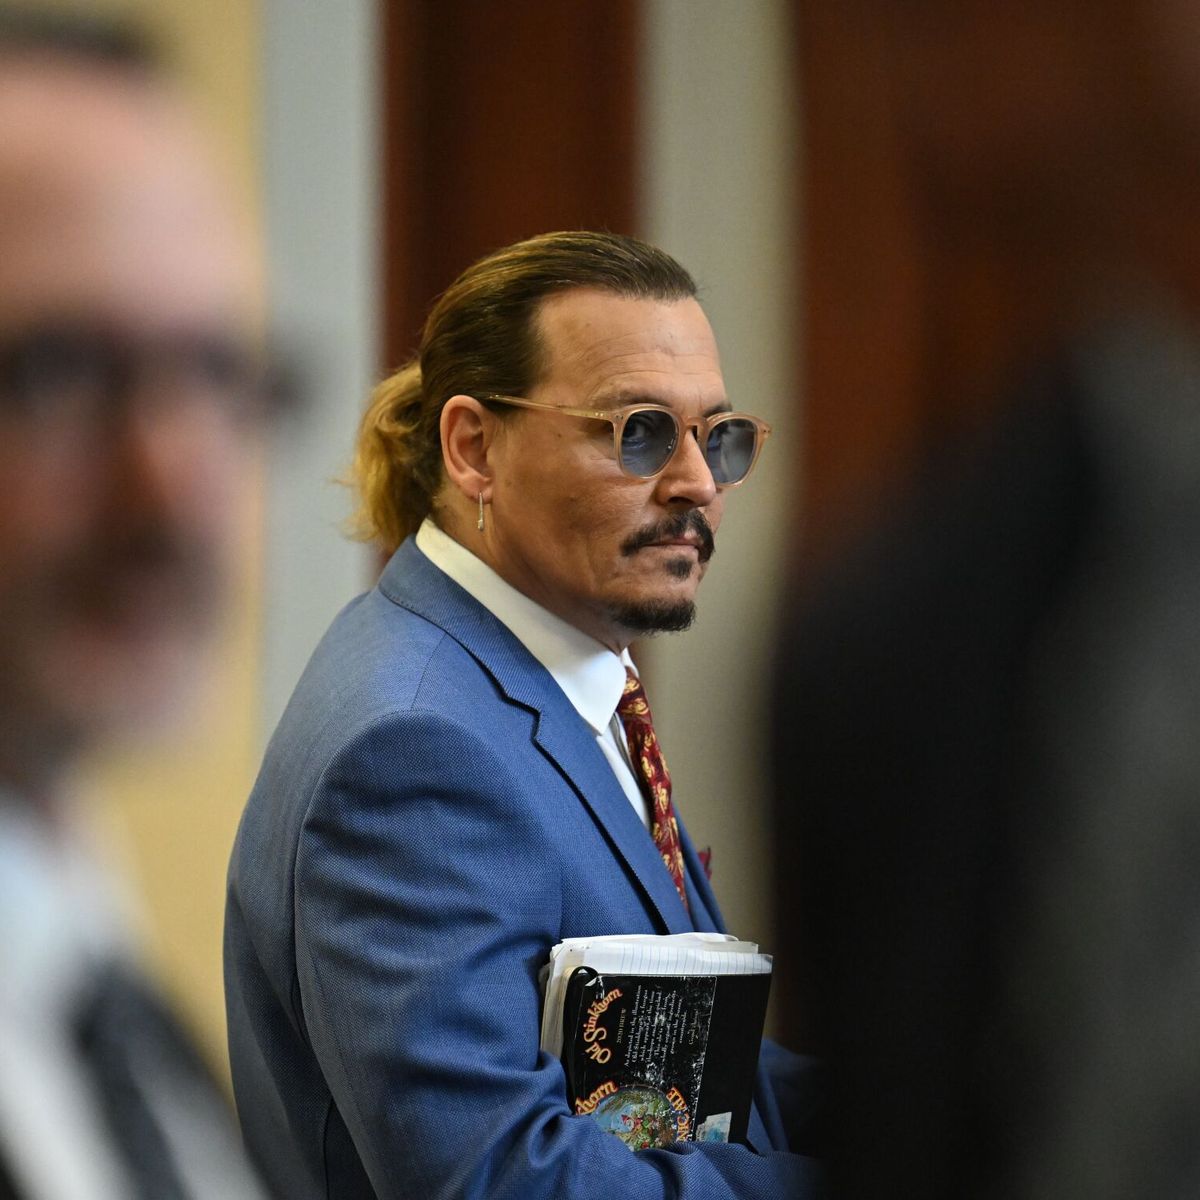 El juicio de Johnny Depp y Heard en cifras: ganancias millonarias, audiencia y su impacto mundial